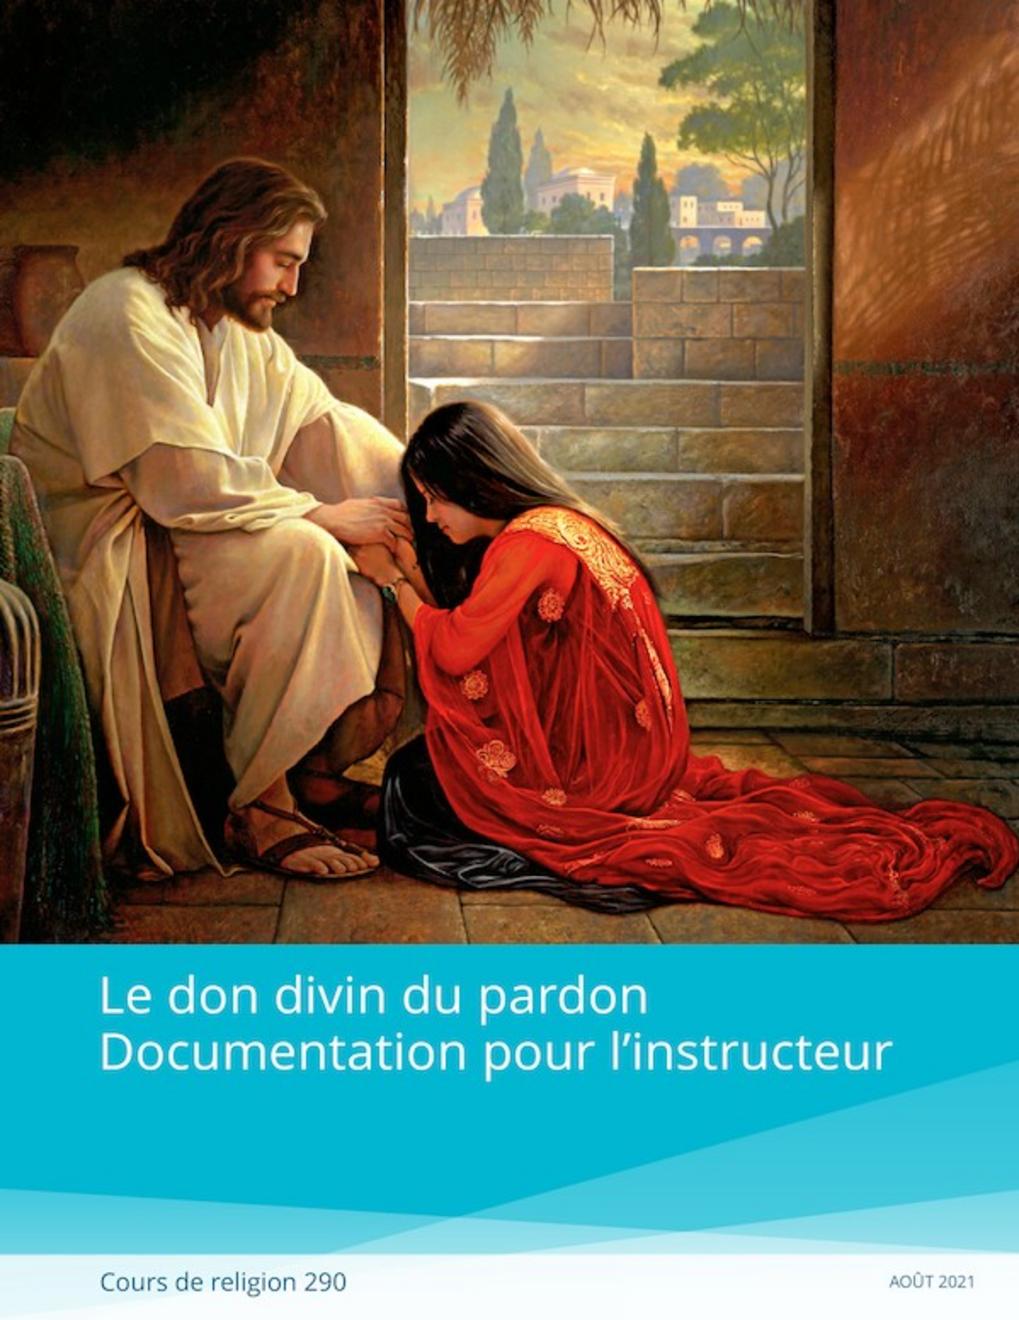 Le don divin du pardon, documentation pour l’instructeur (Religion 290)